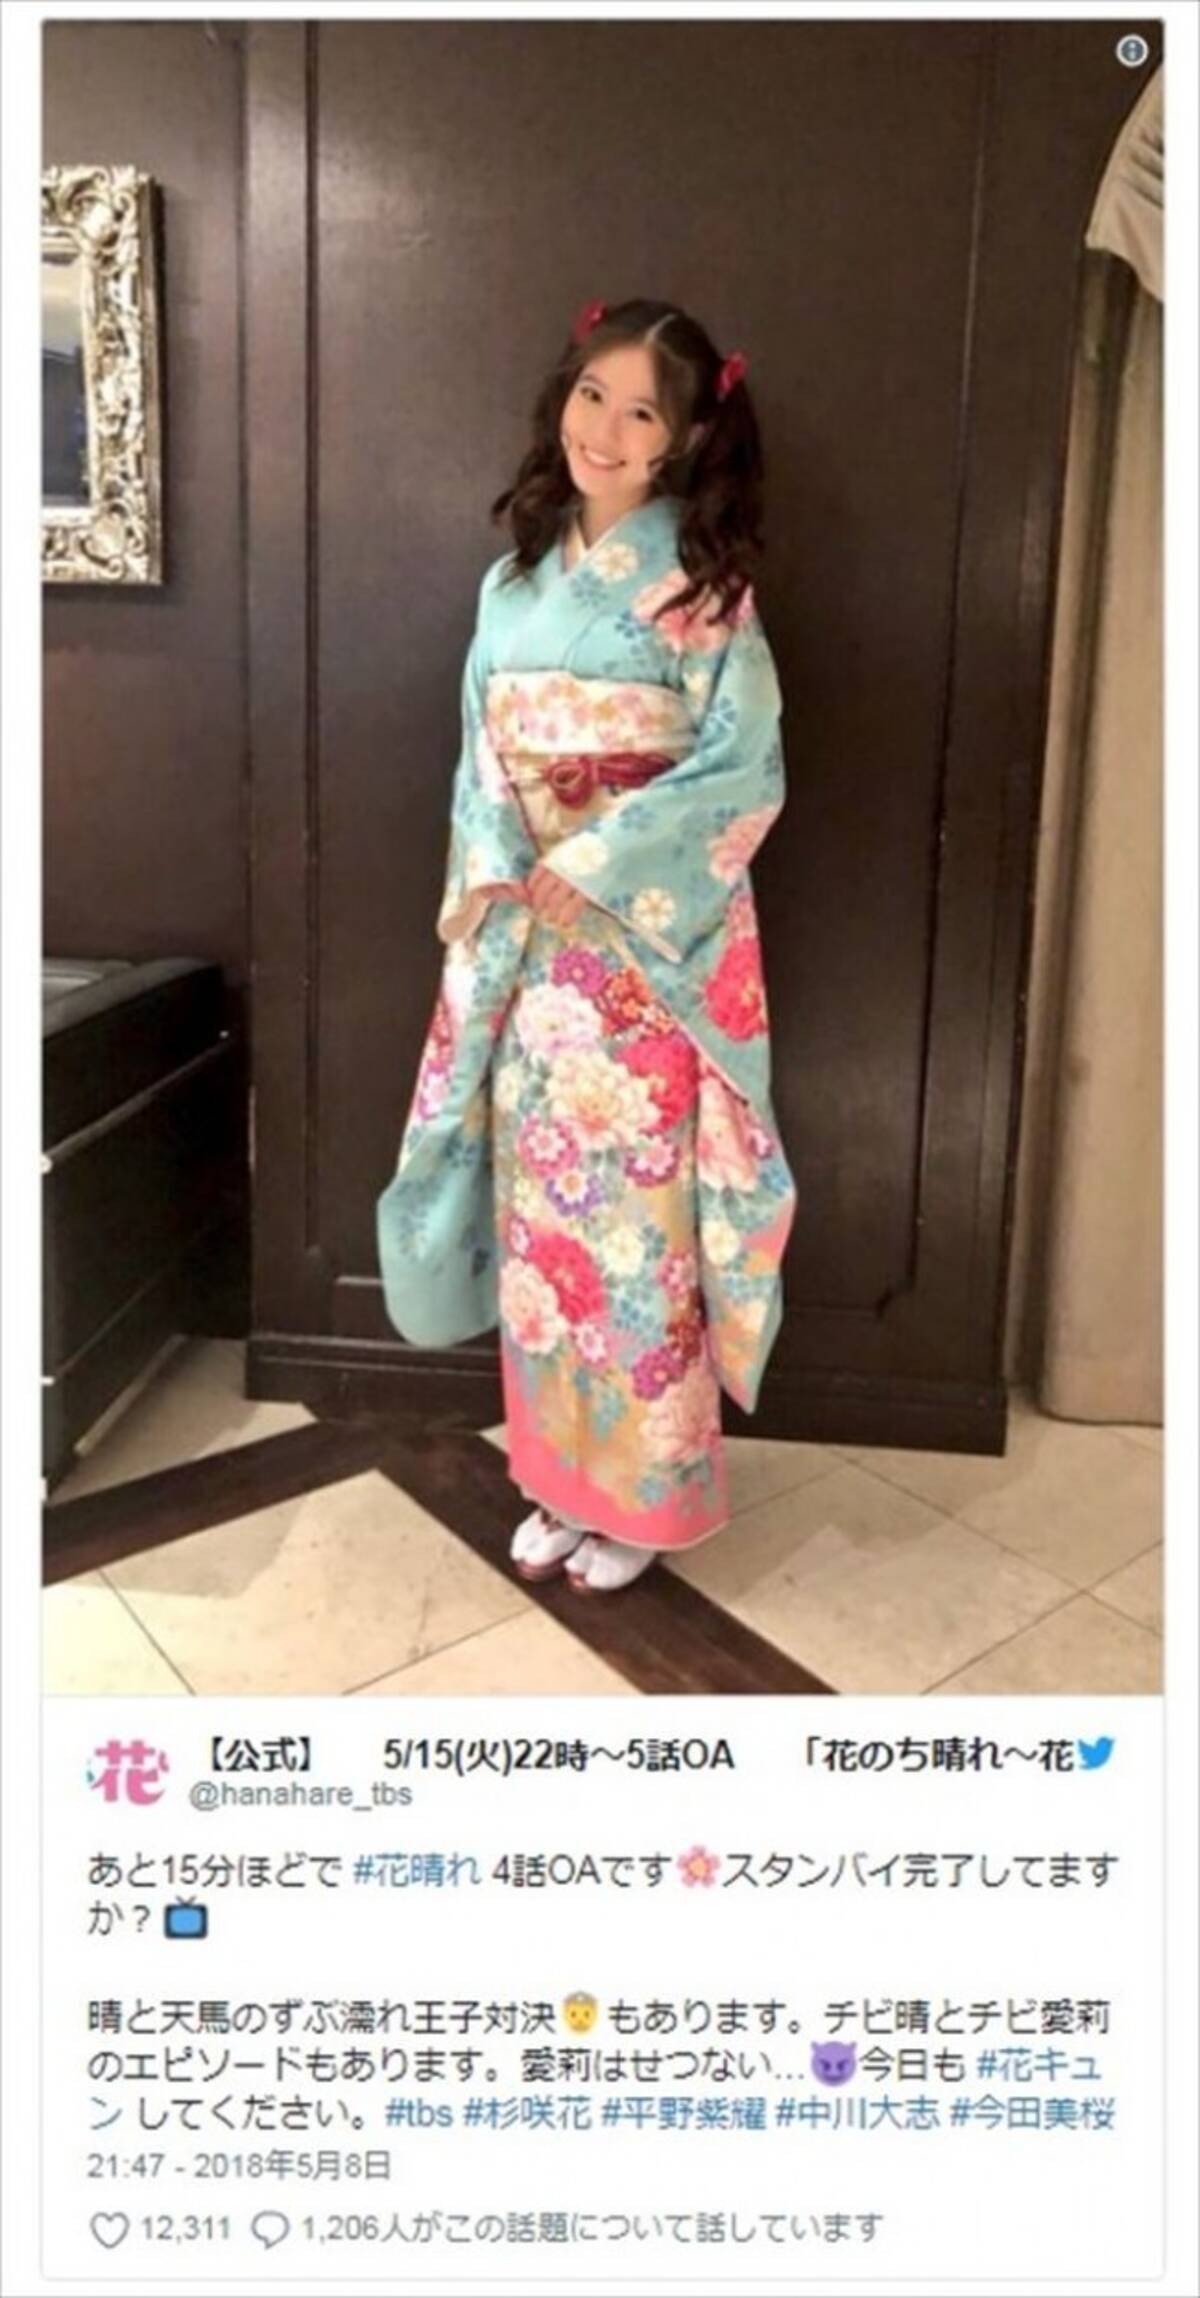 花のち晴れ 美少女 今田美桜の晴れ着姿にファン歓喜 18年5月9日 エキサイトニュース